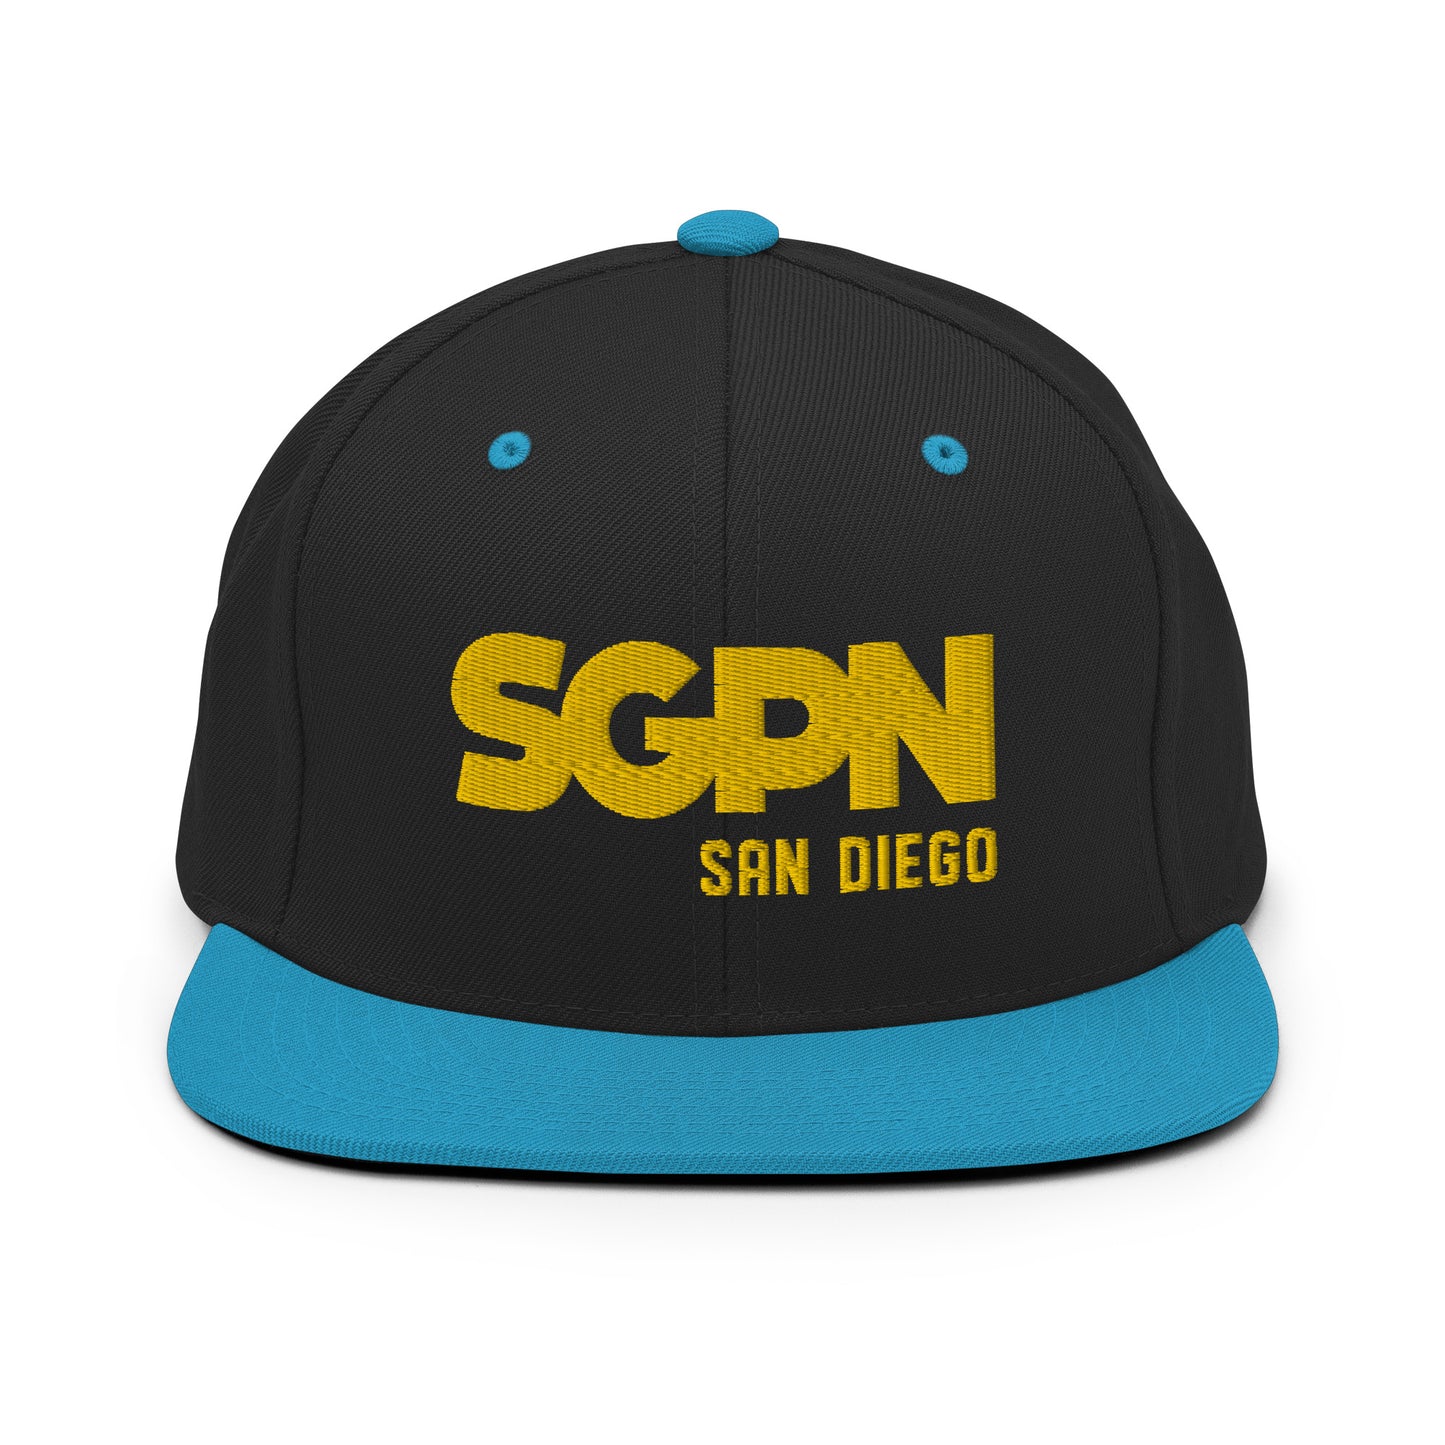 SGPN - San Diego edition (v2) - Snapback Hat